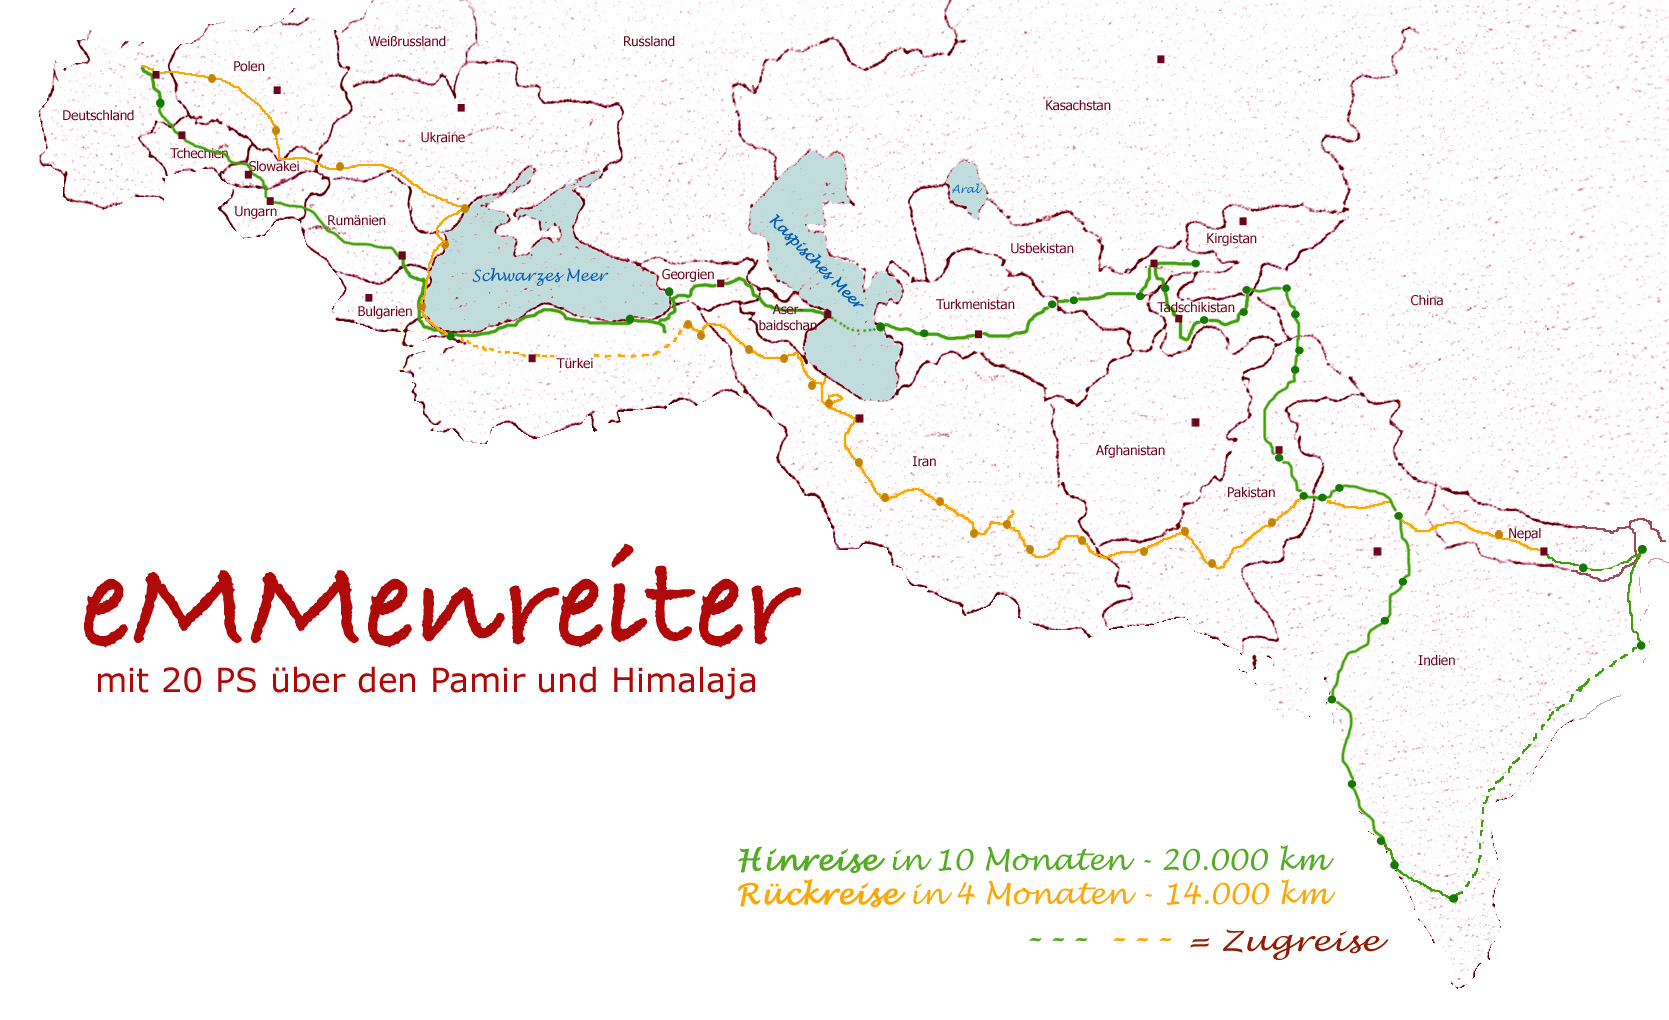 eMMenreiter-Reiseroute 2008-2009